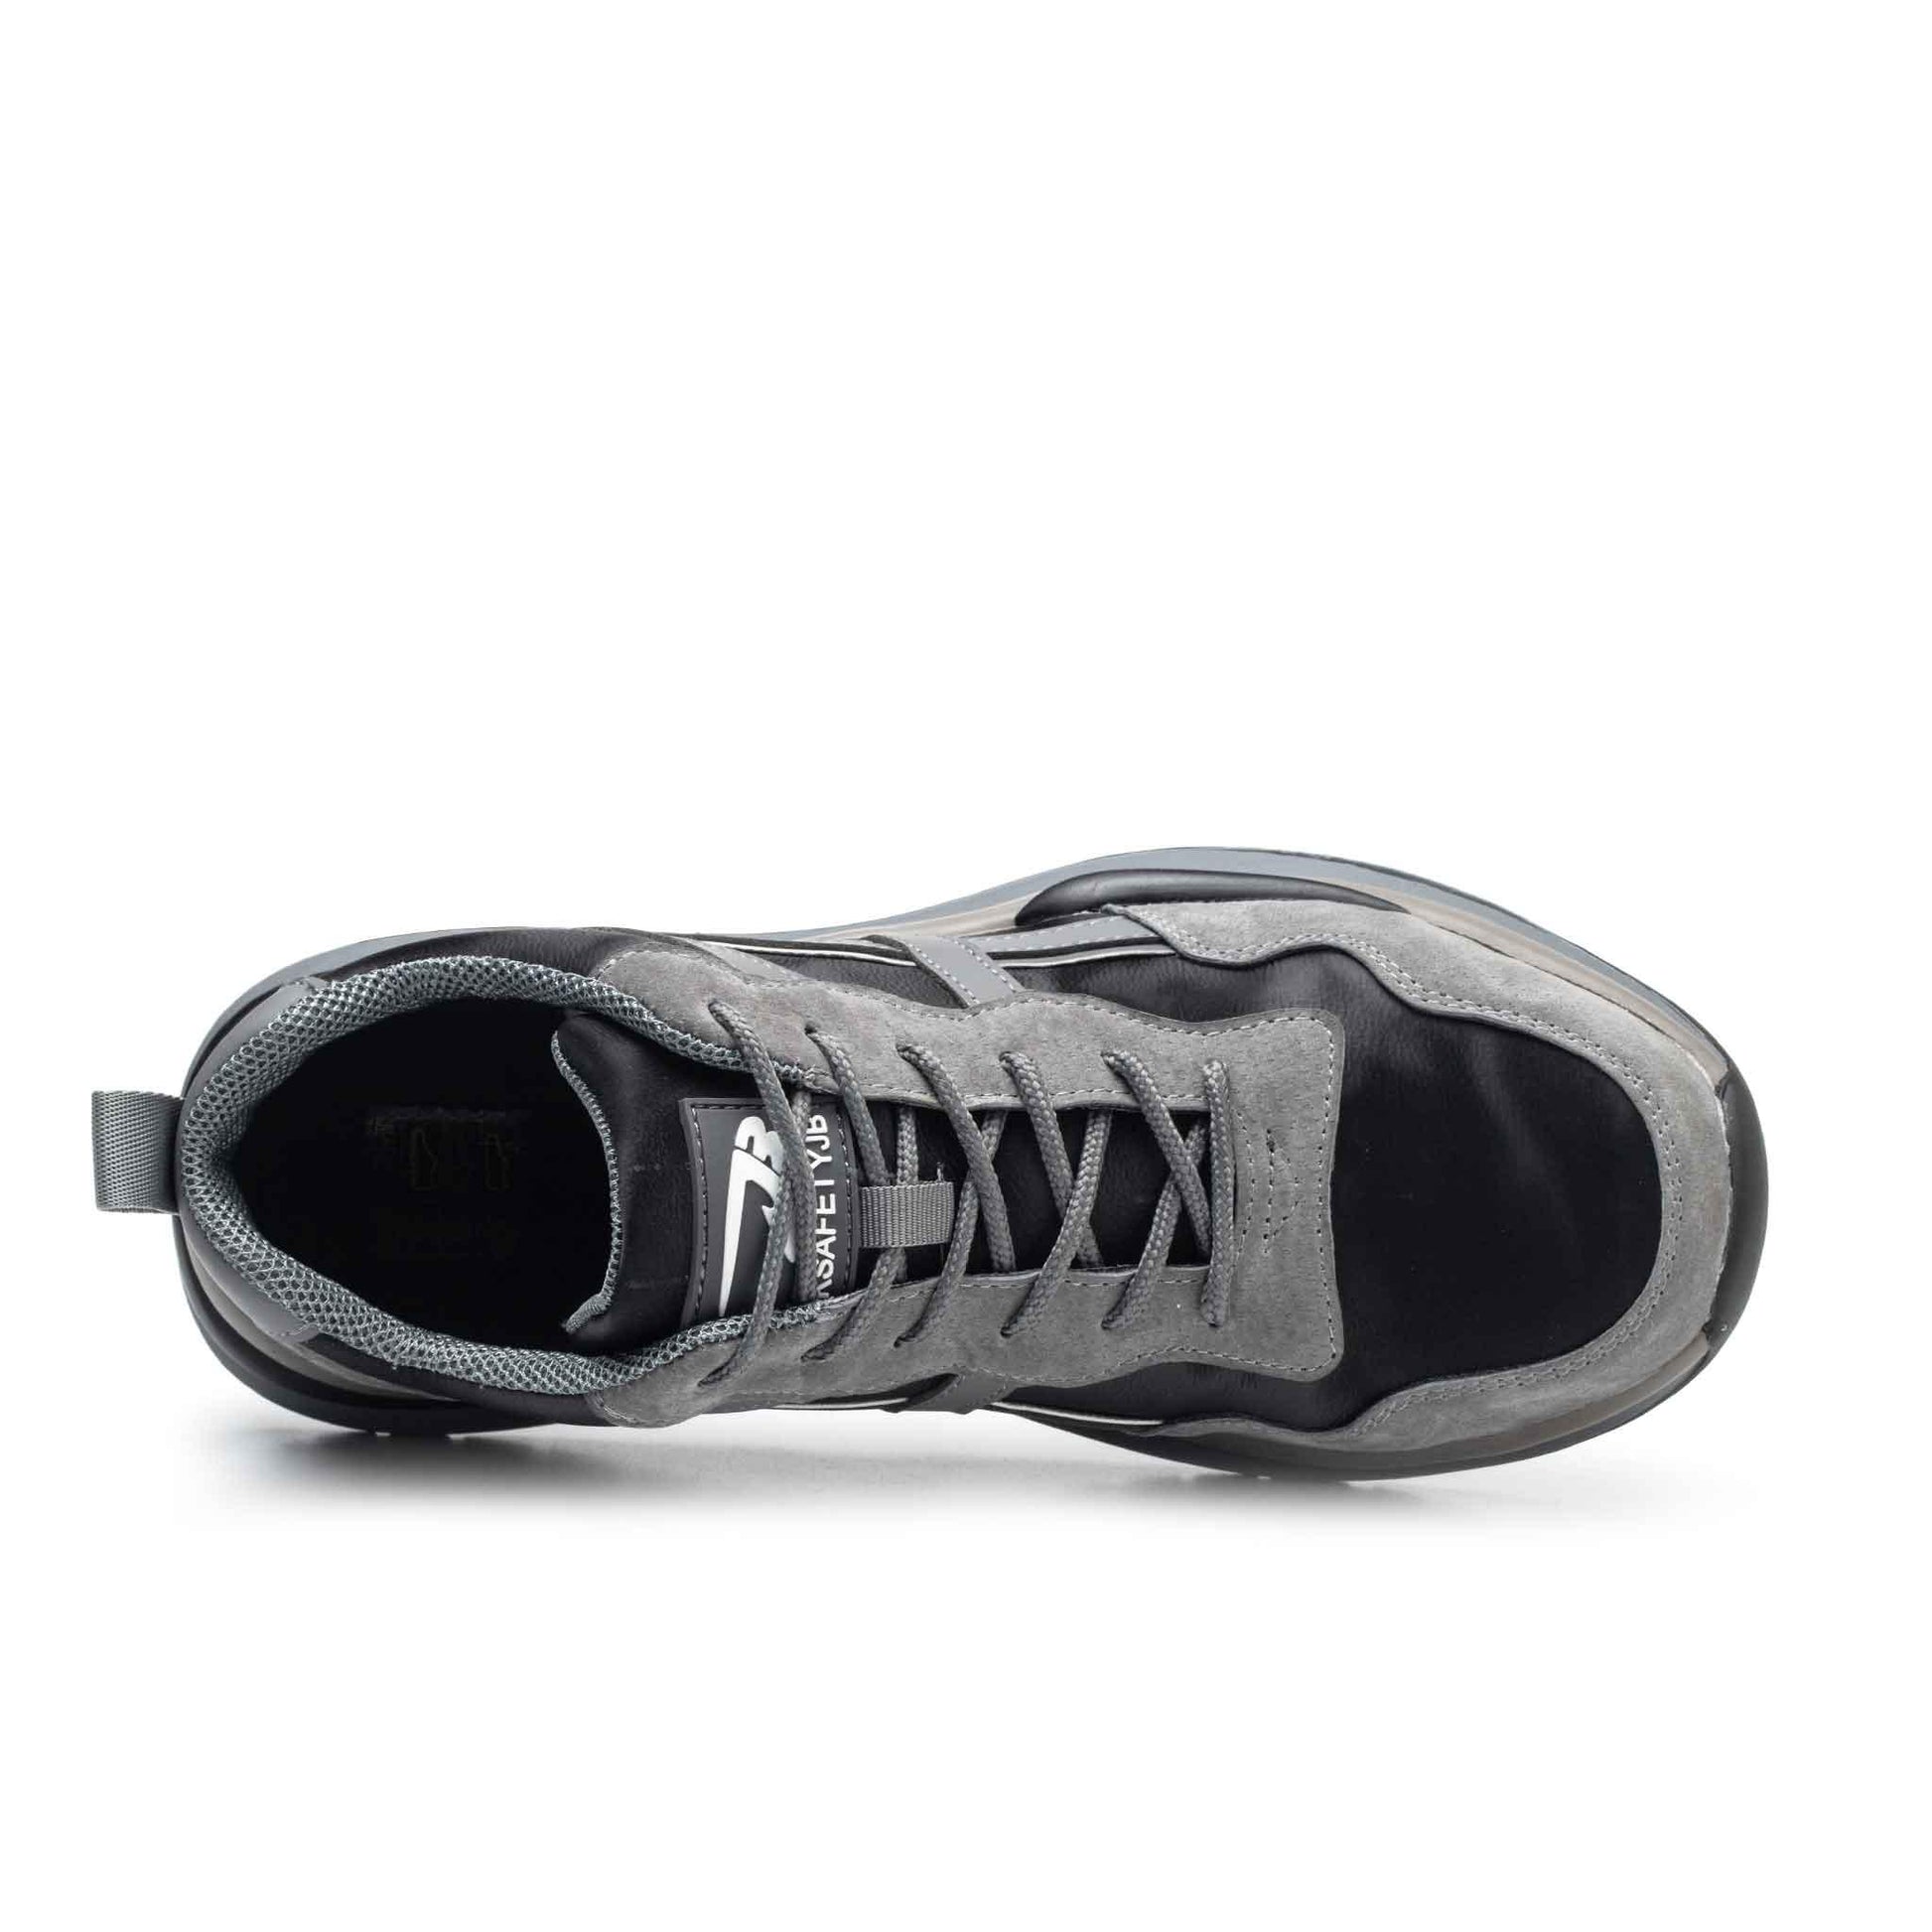 Women's Steel Toe Shoes - Waterproof | B204 - USINE PRO Footwear